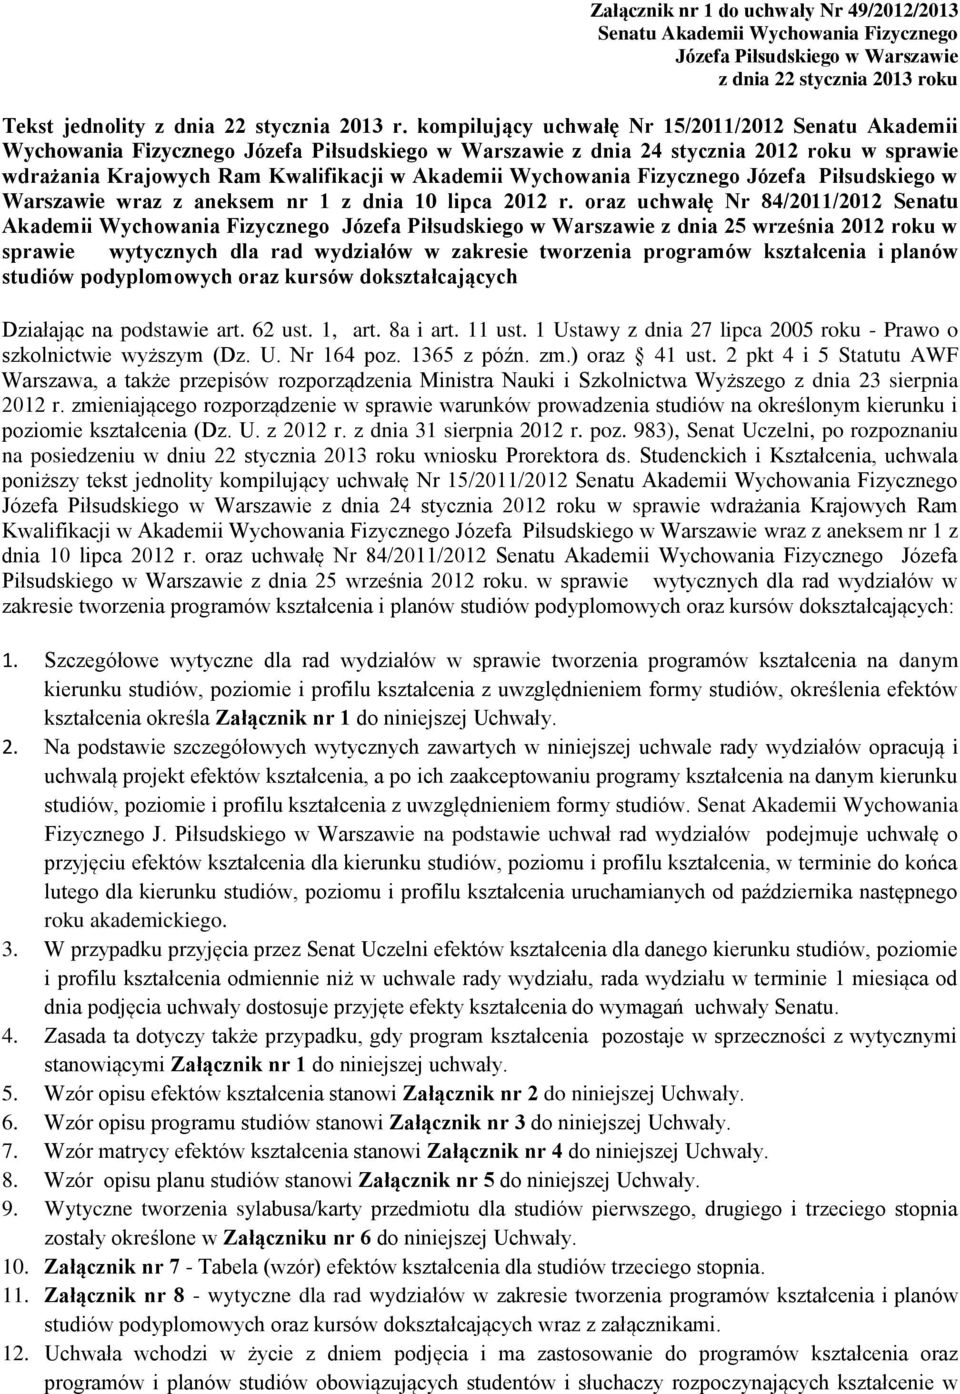 Wychowania Fizycznego Józefa Piłsudskiego w Warszawie wraz z aneksem nr 1 z dnia 10 lipca 2012 r.